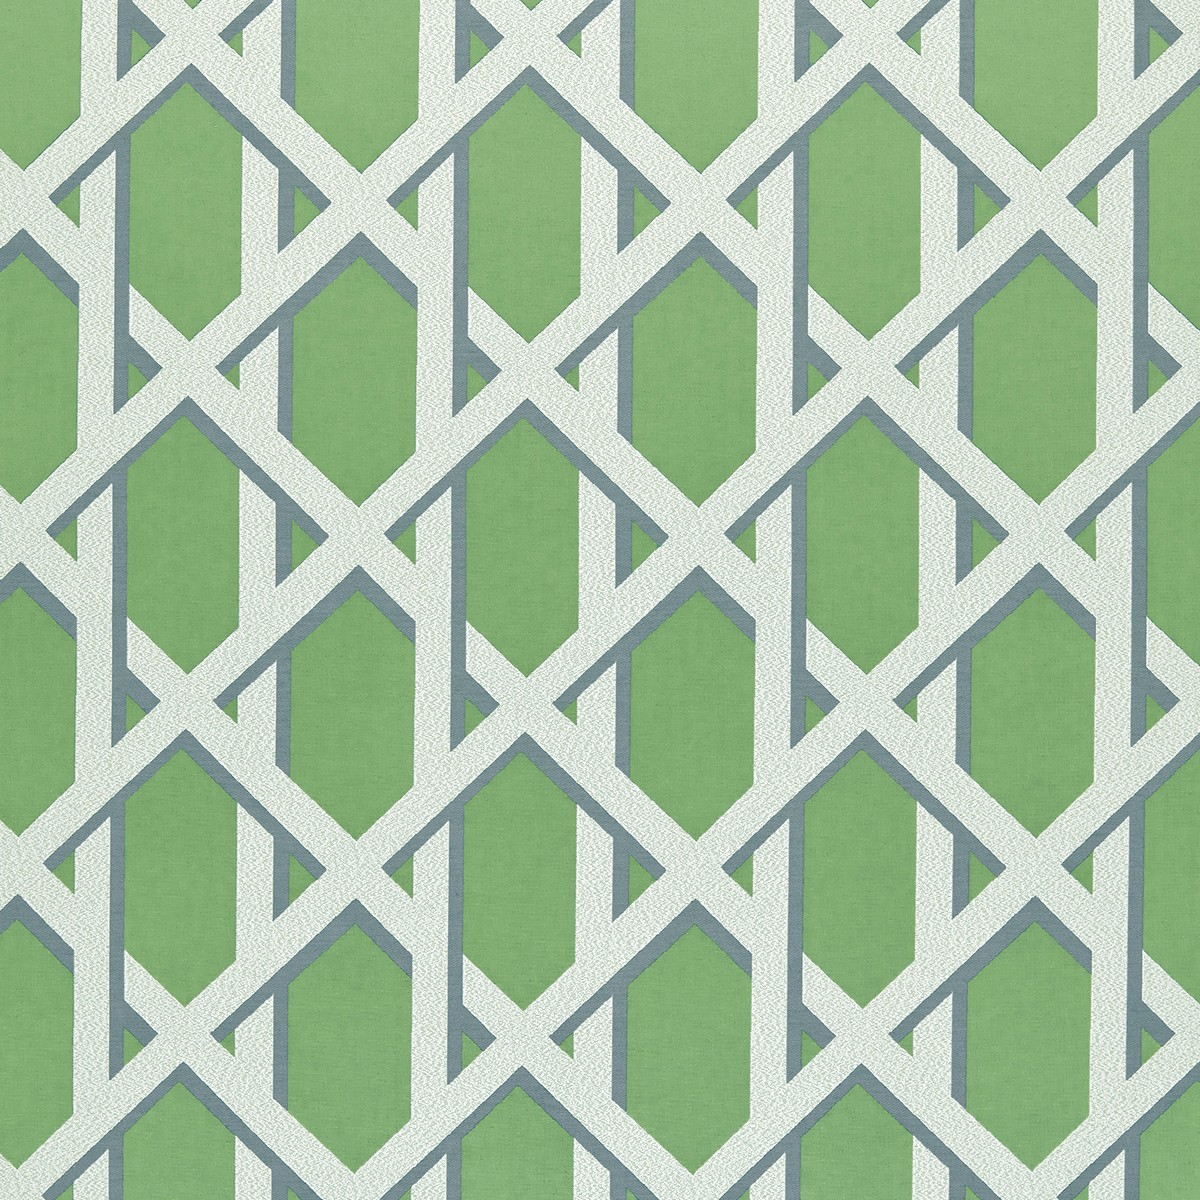 Lattice Kiwi Fabric by Ashley Wilde